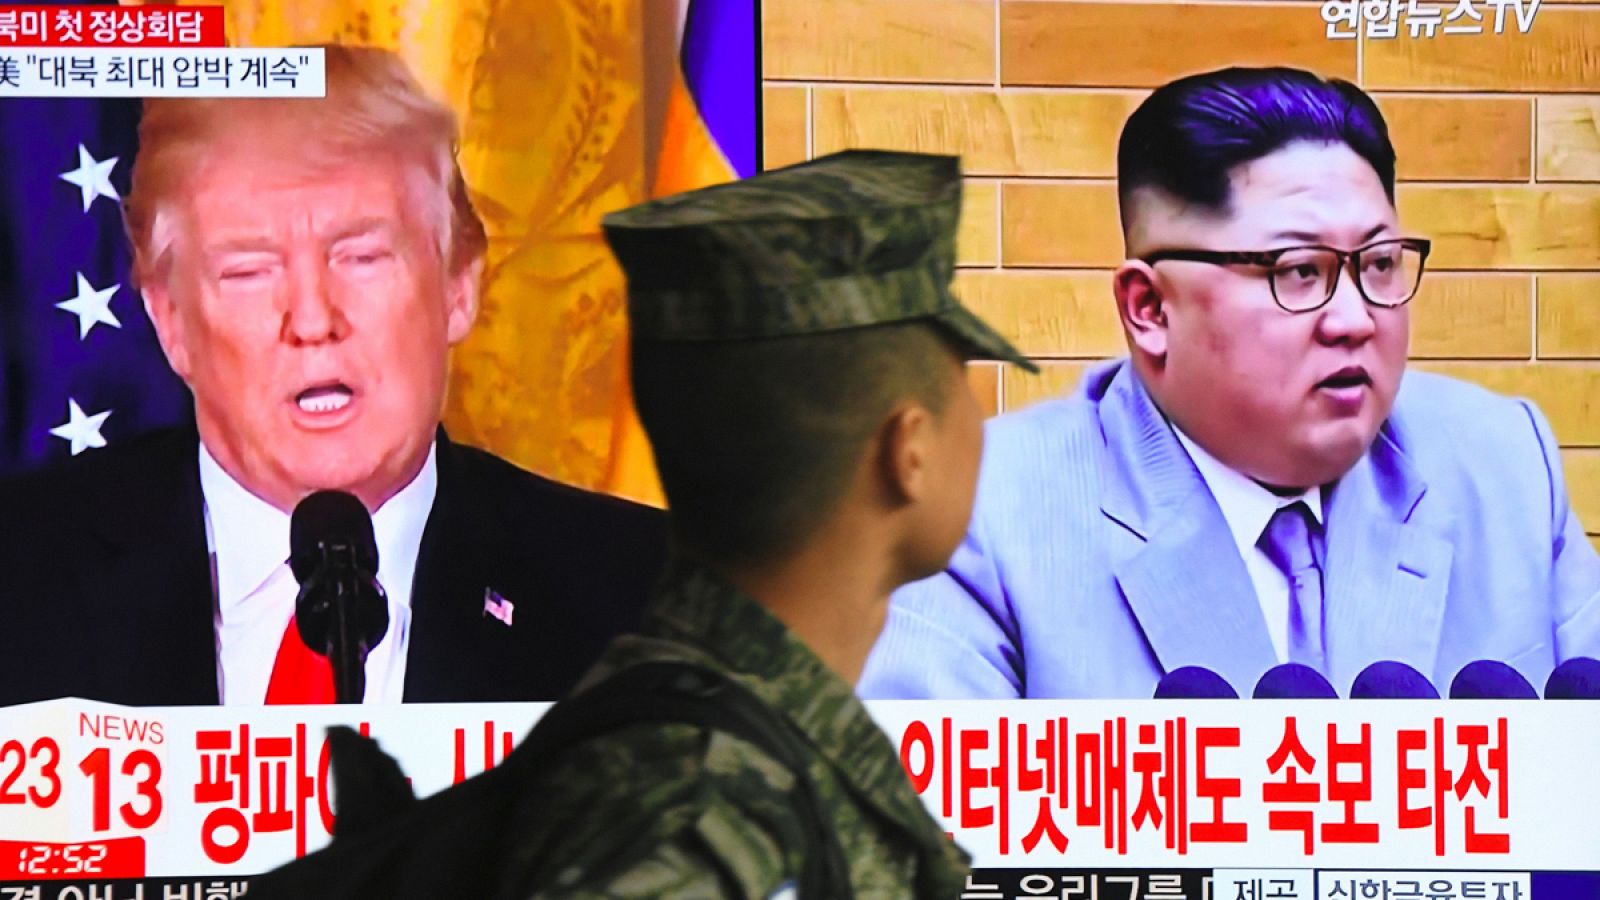 Una televisión surcoreana muestra la imagen del presidente de Estados Unidos, Donald Trump, y del líder de Corea del Norte, Kim Jong-un